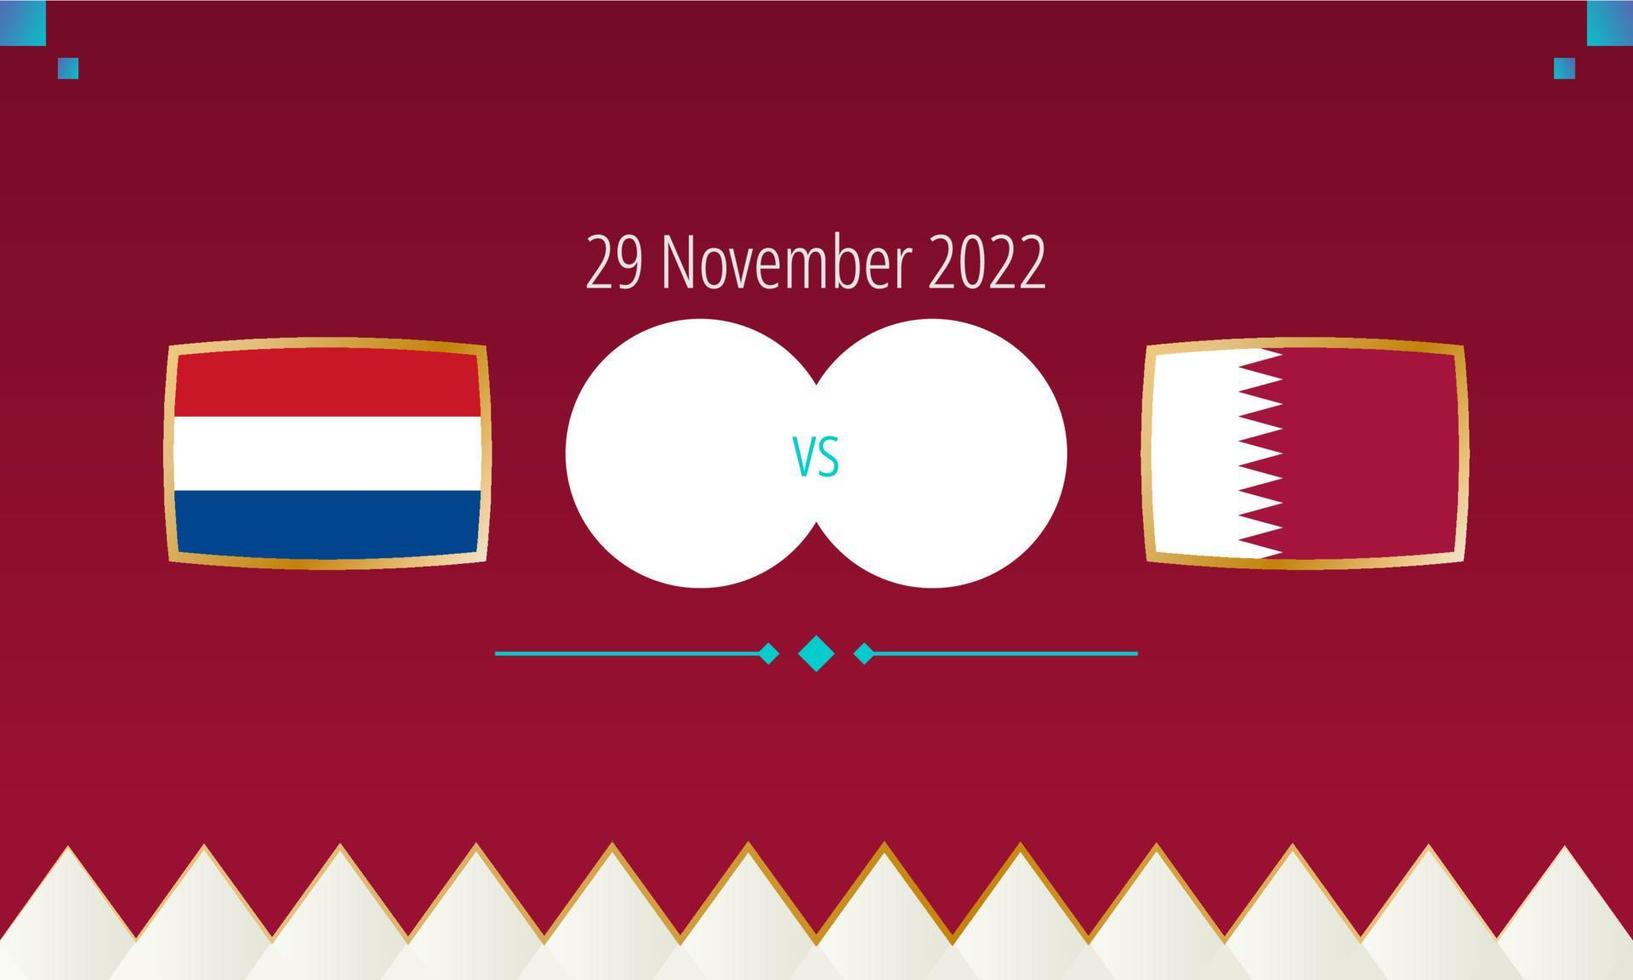 nederländerna mot qatar fotboll match, internationell fotboll konkurrens 2022. vektor